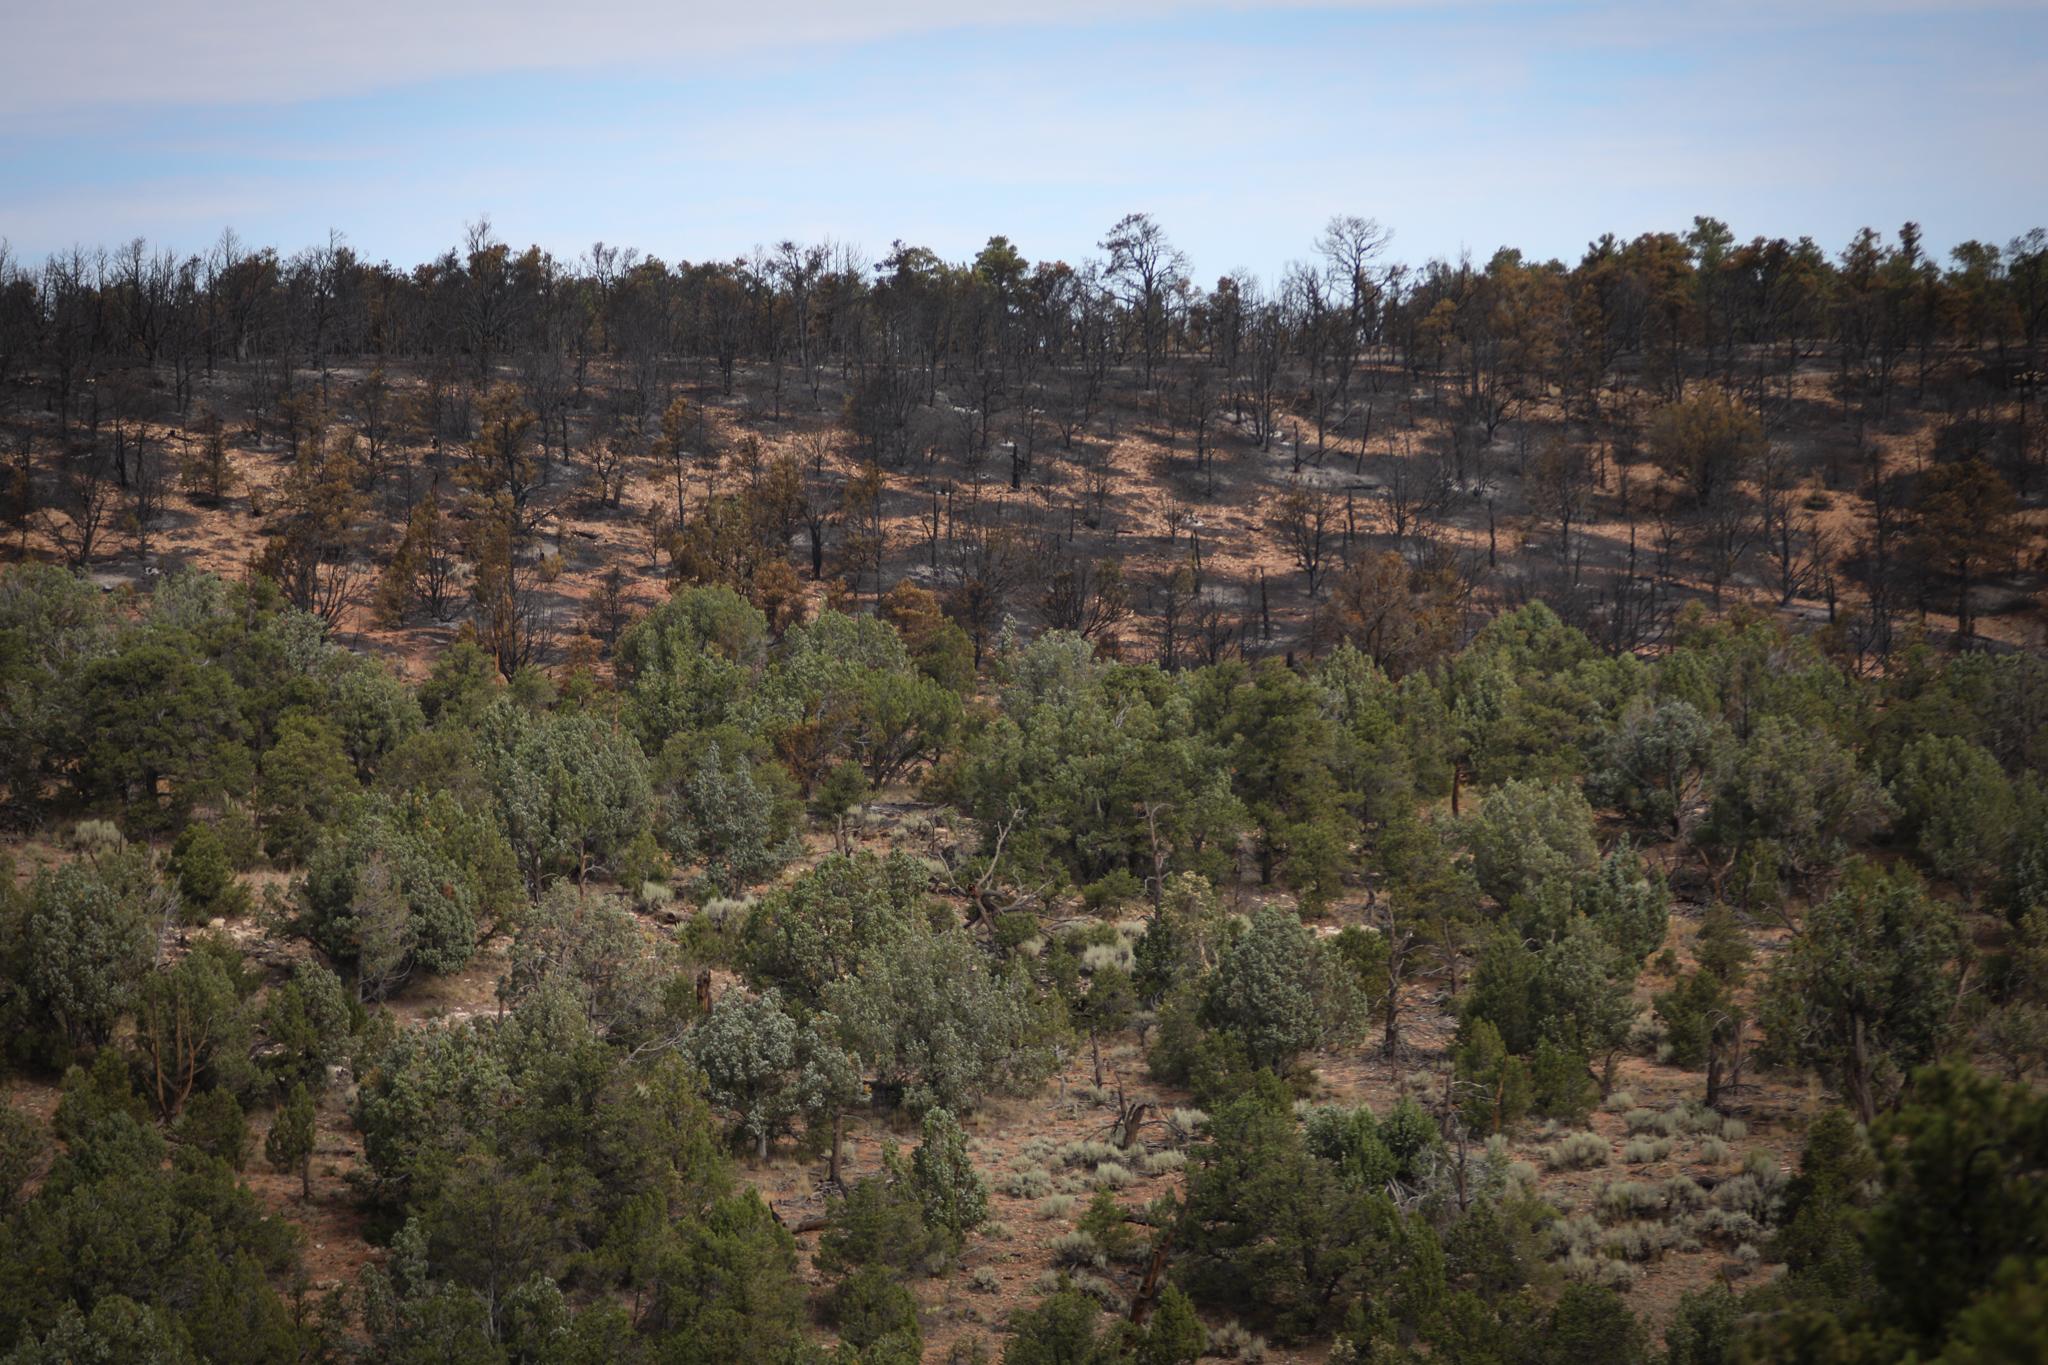 burned vegetation on a slope above unburned vegetation below due to fireline